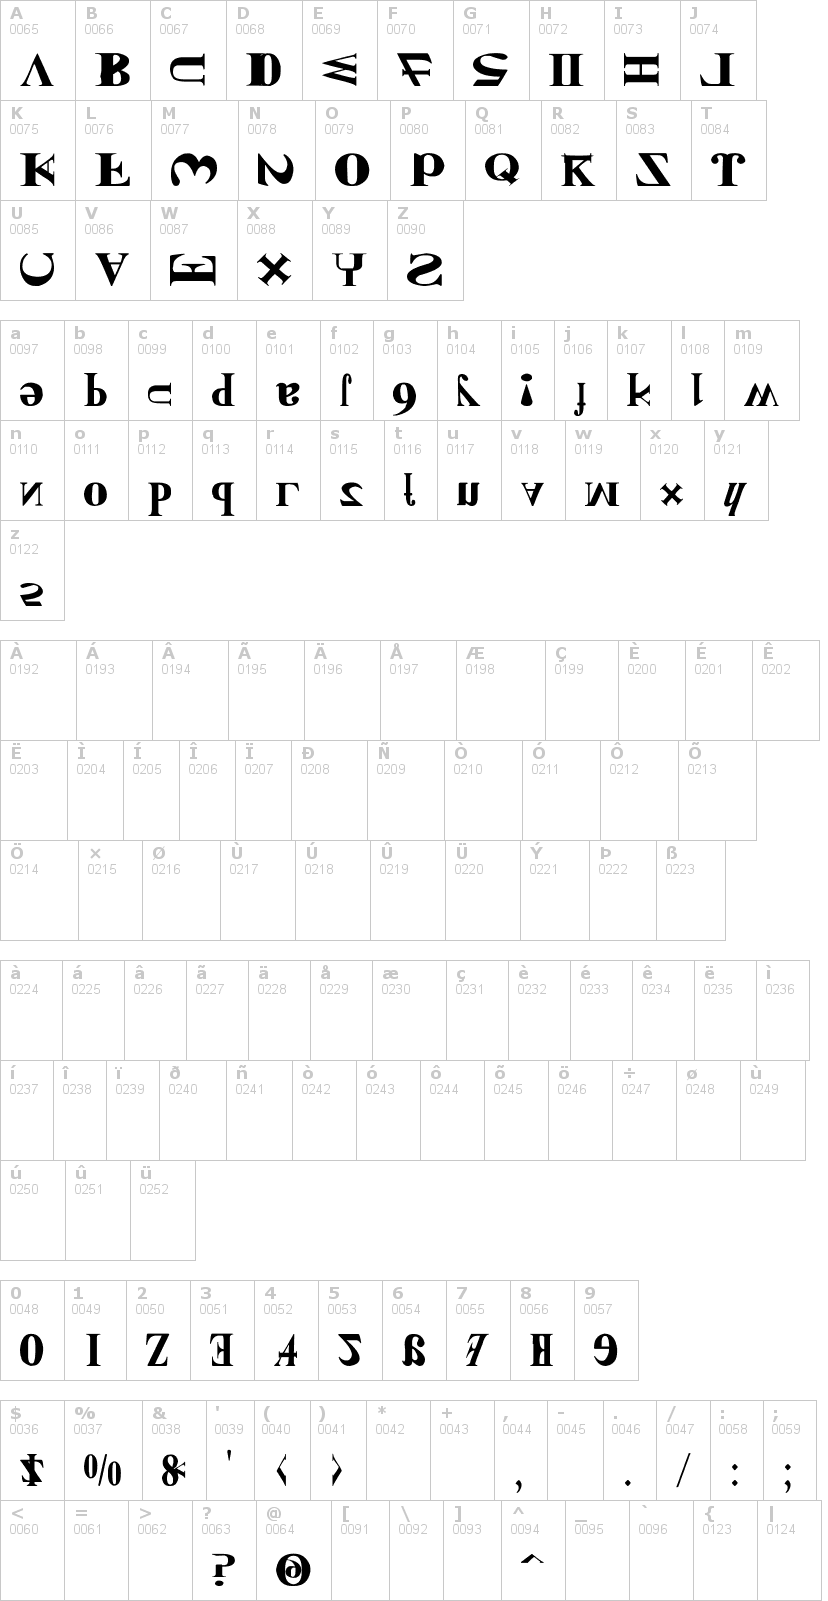 Lettere dell'alfabeto del font new-kind-of-english con le quali è possibile realizzare adesivi prespaziati